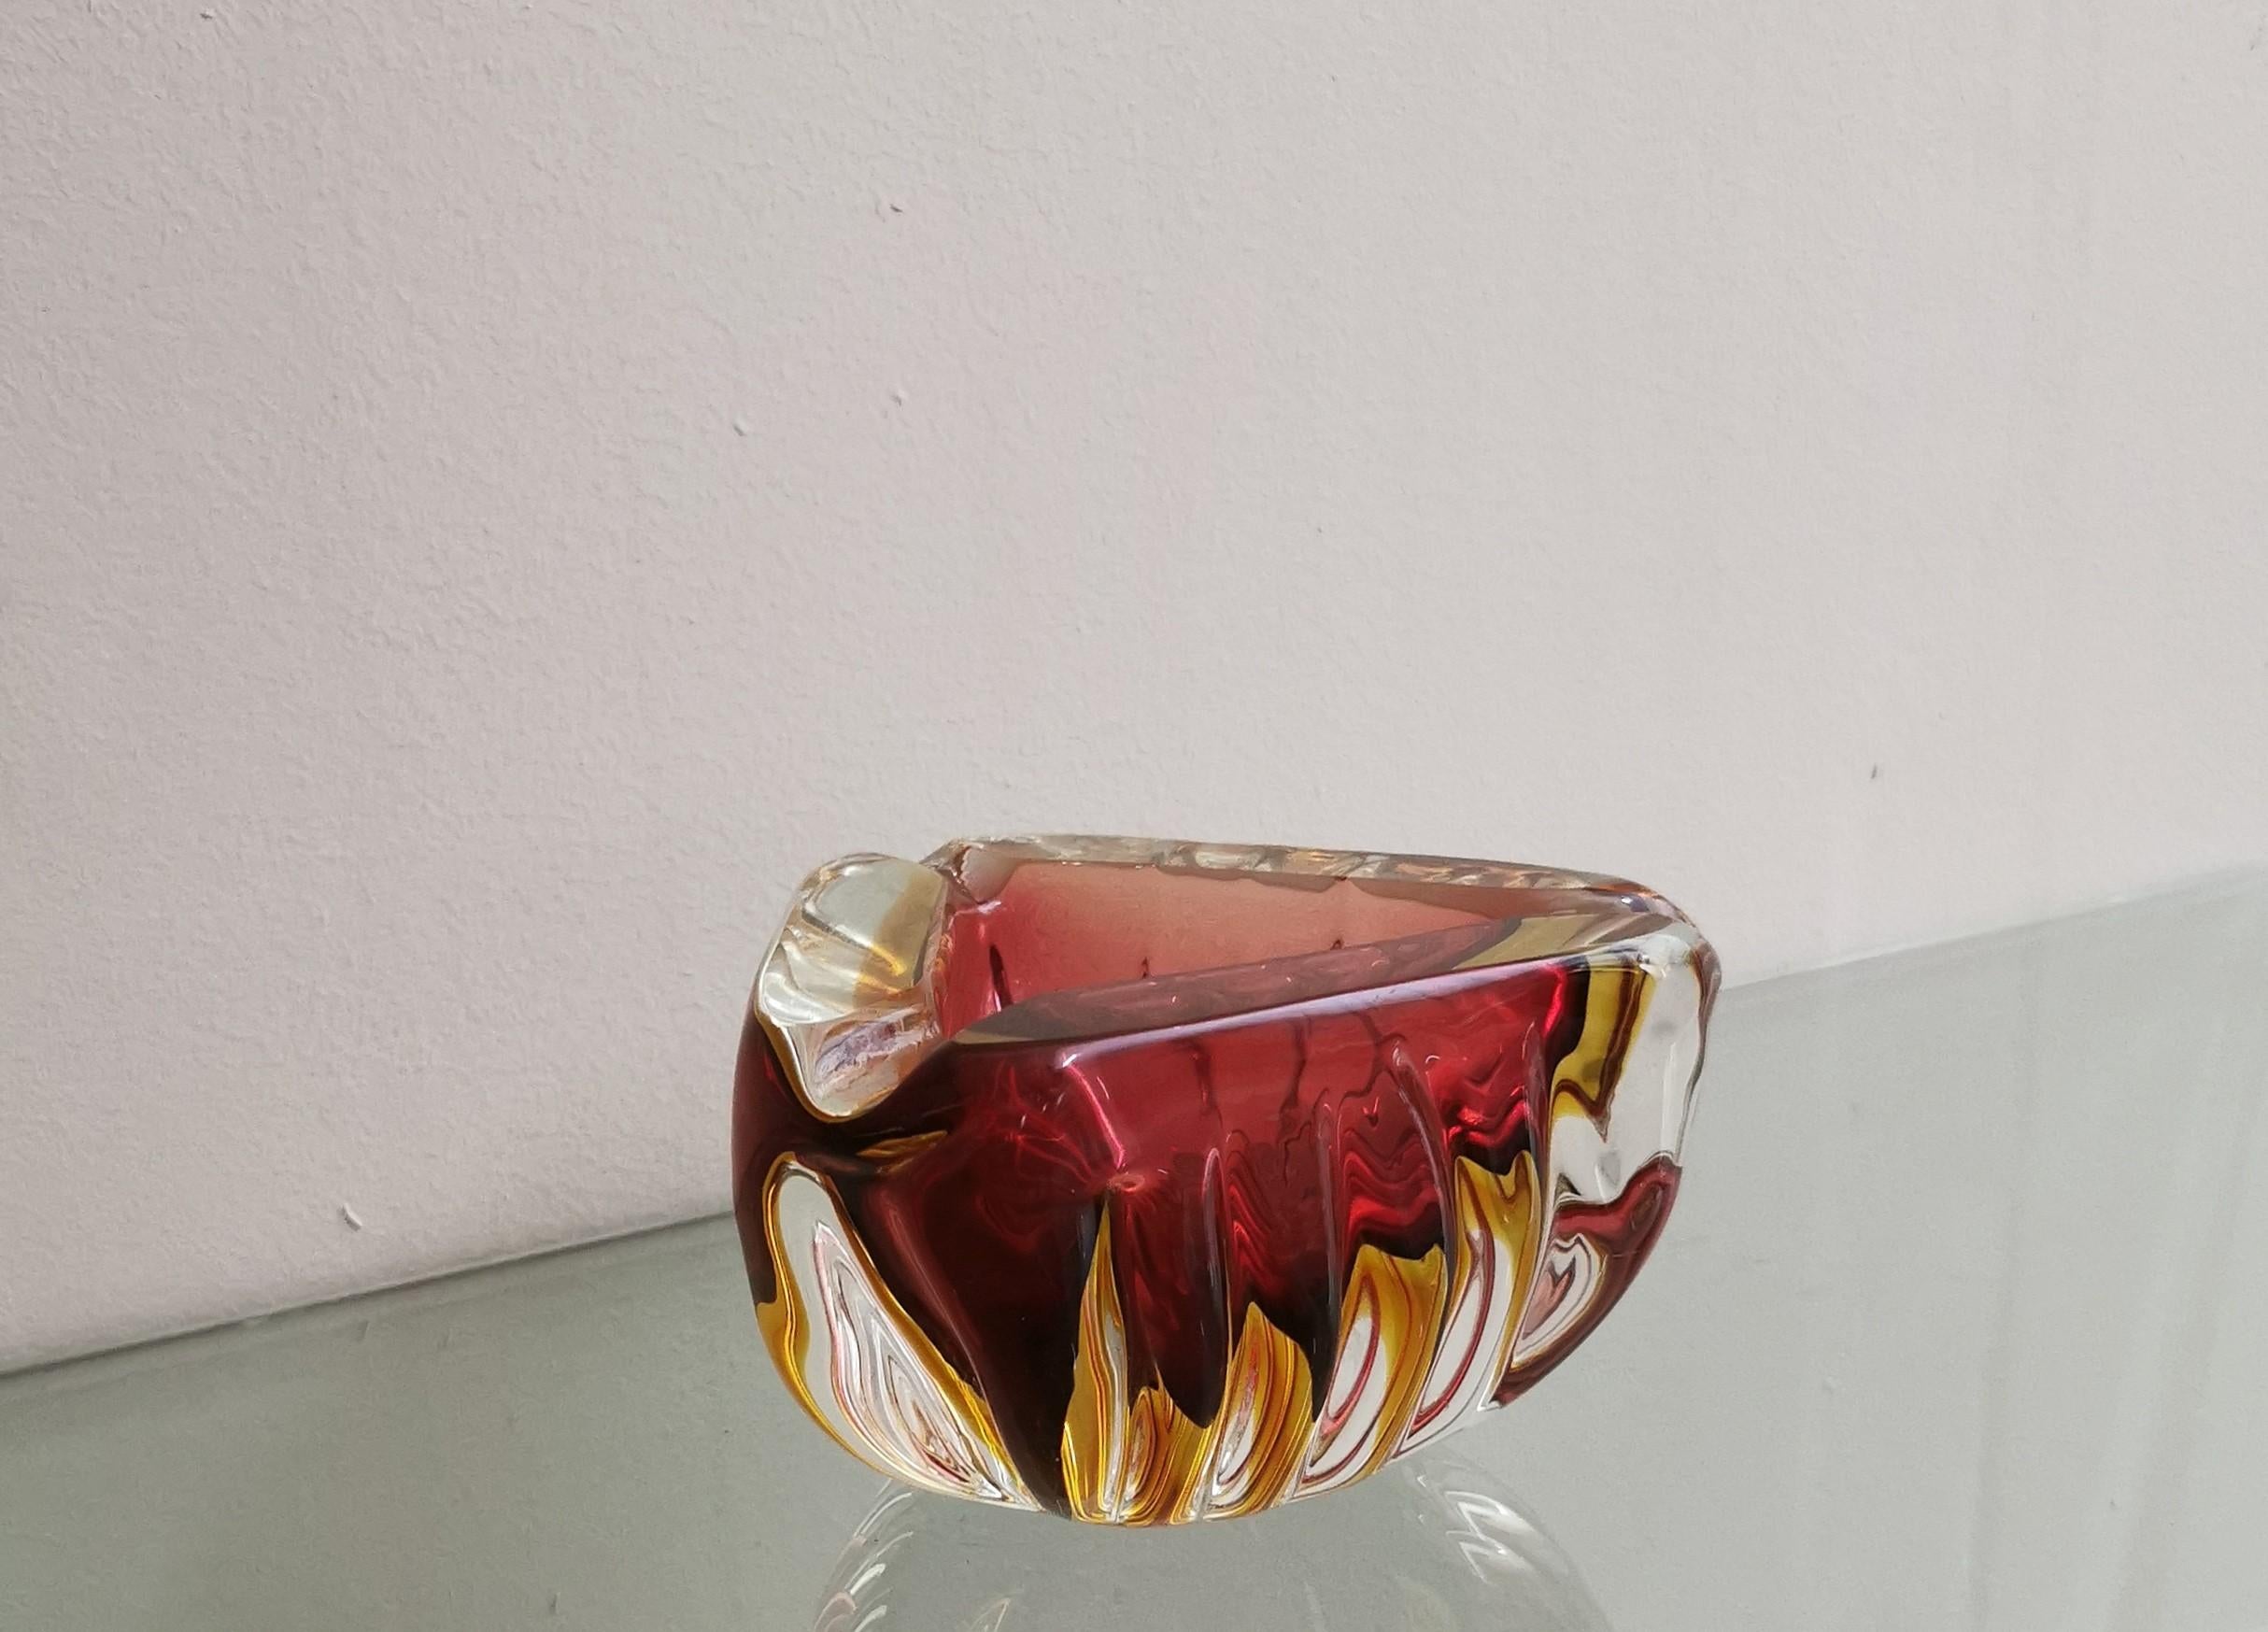 Murano Glass Ashtray Decorative Bowl Flavio Poli Midcentury Italian Design 1970s For Sale 1